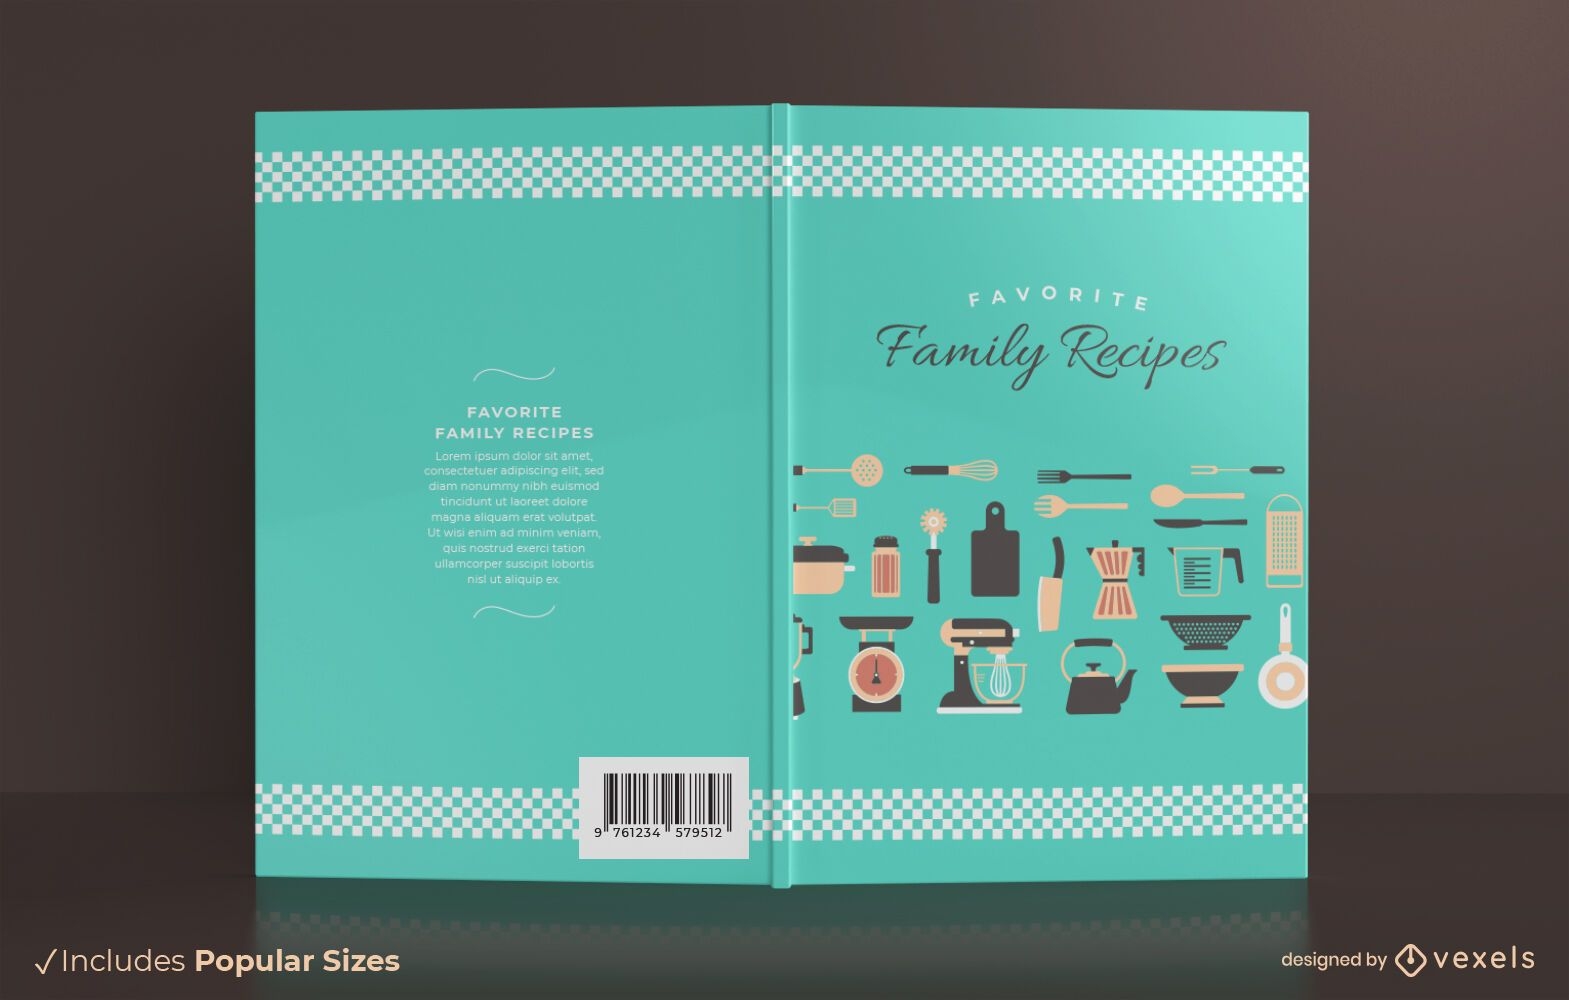 Family recipes book cover design 